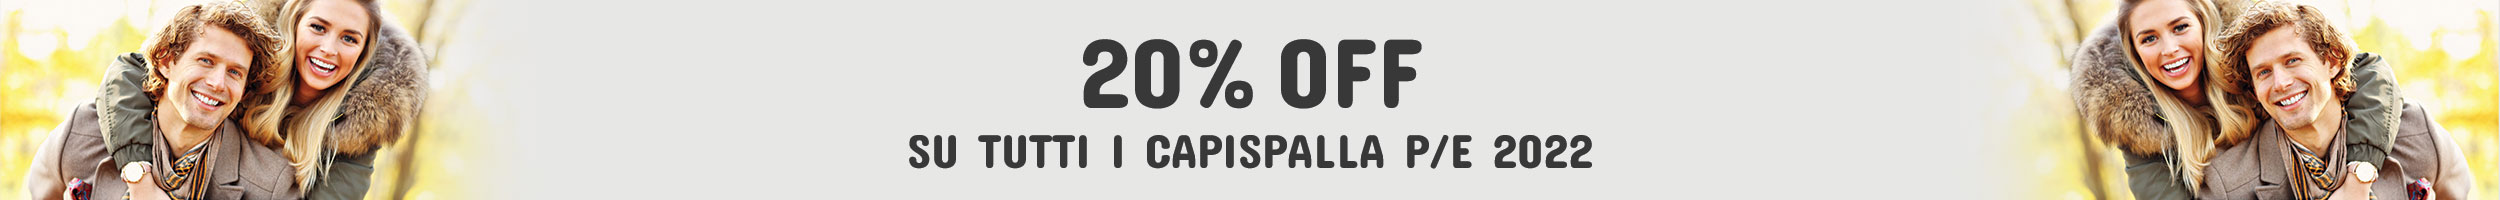 Promo Capispalla 20 %OFF